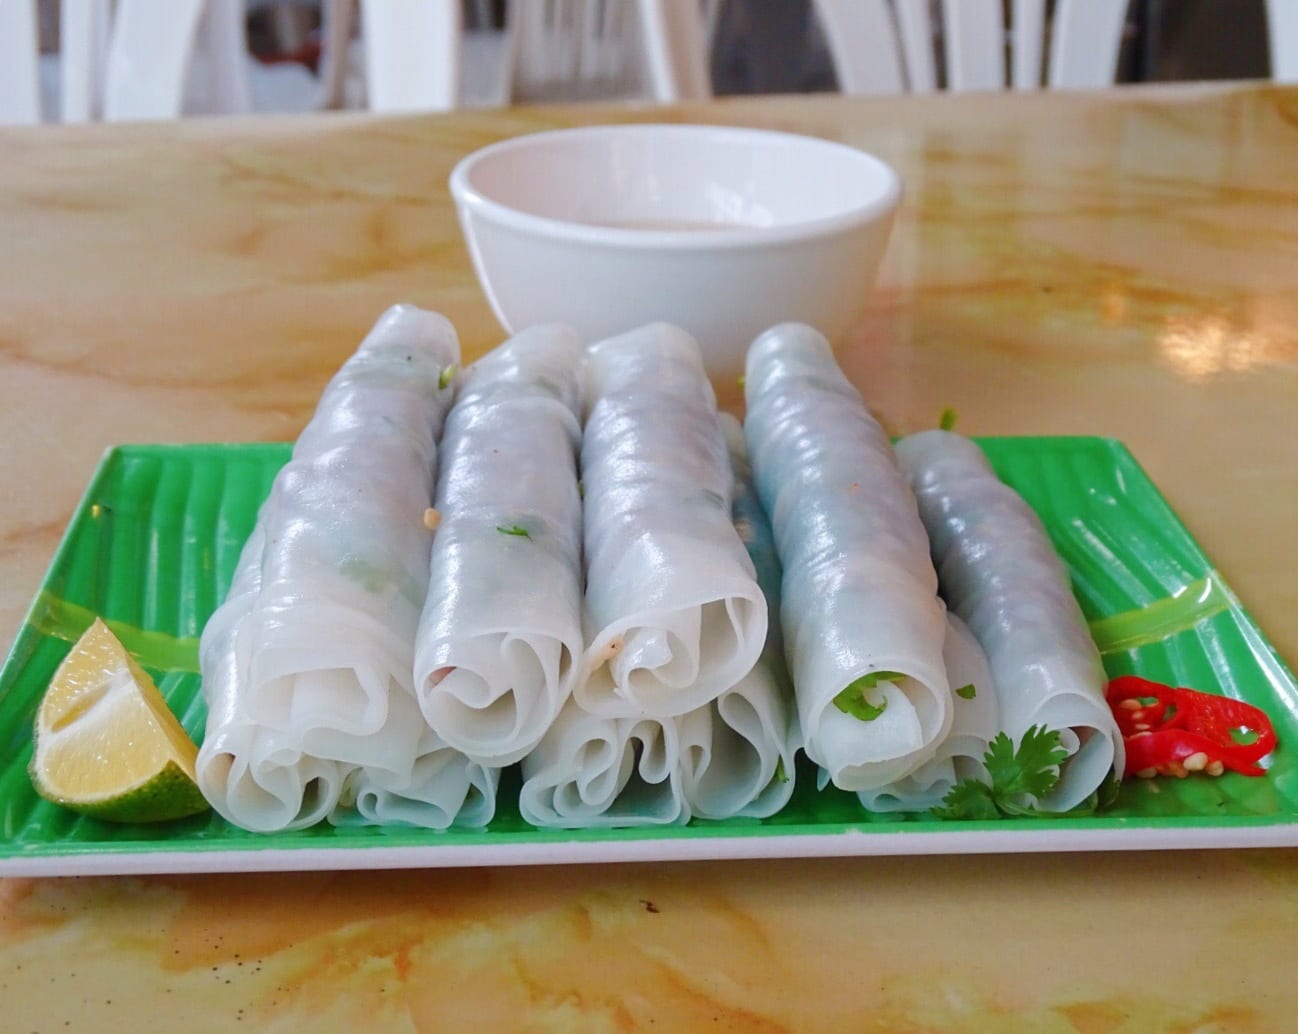 Pho cuon food in hanoi